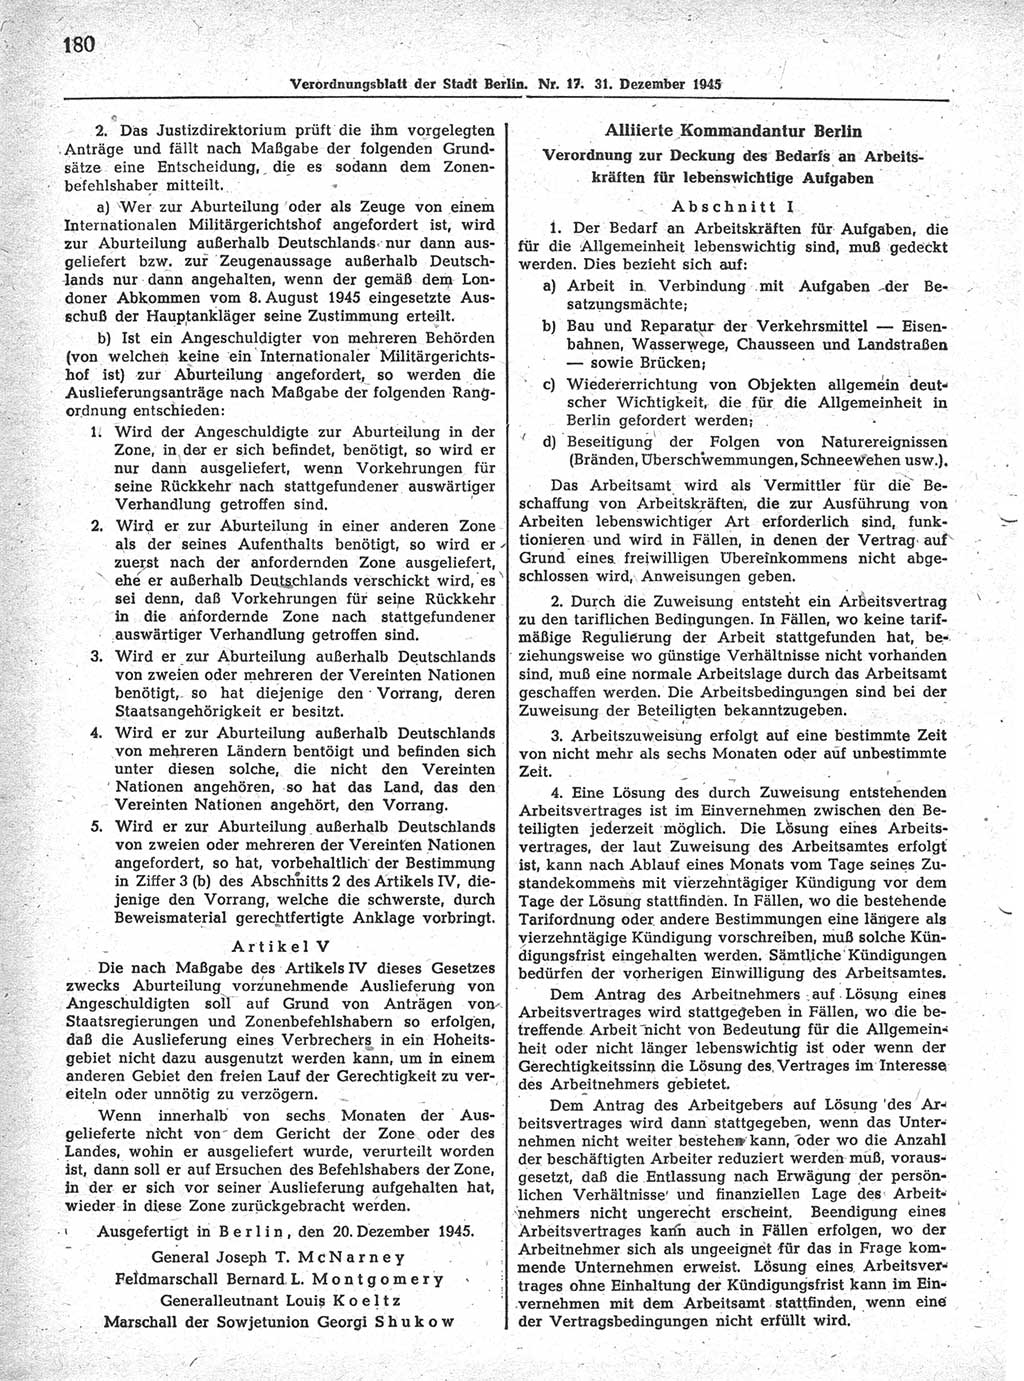 Verordnungsblatt (VOBl.) der Stadt Berlin 1945, Seite 180 (VOBl. Bln. 1945, S. 180)